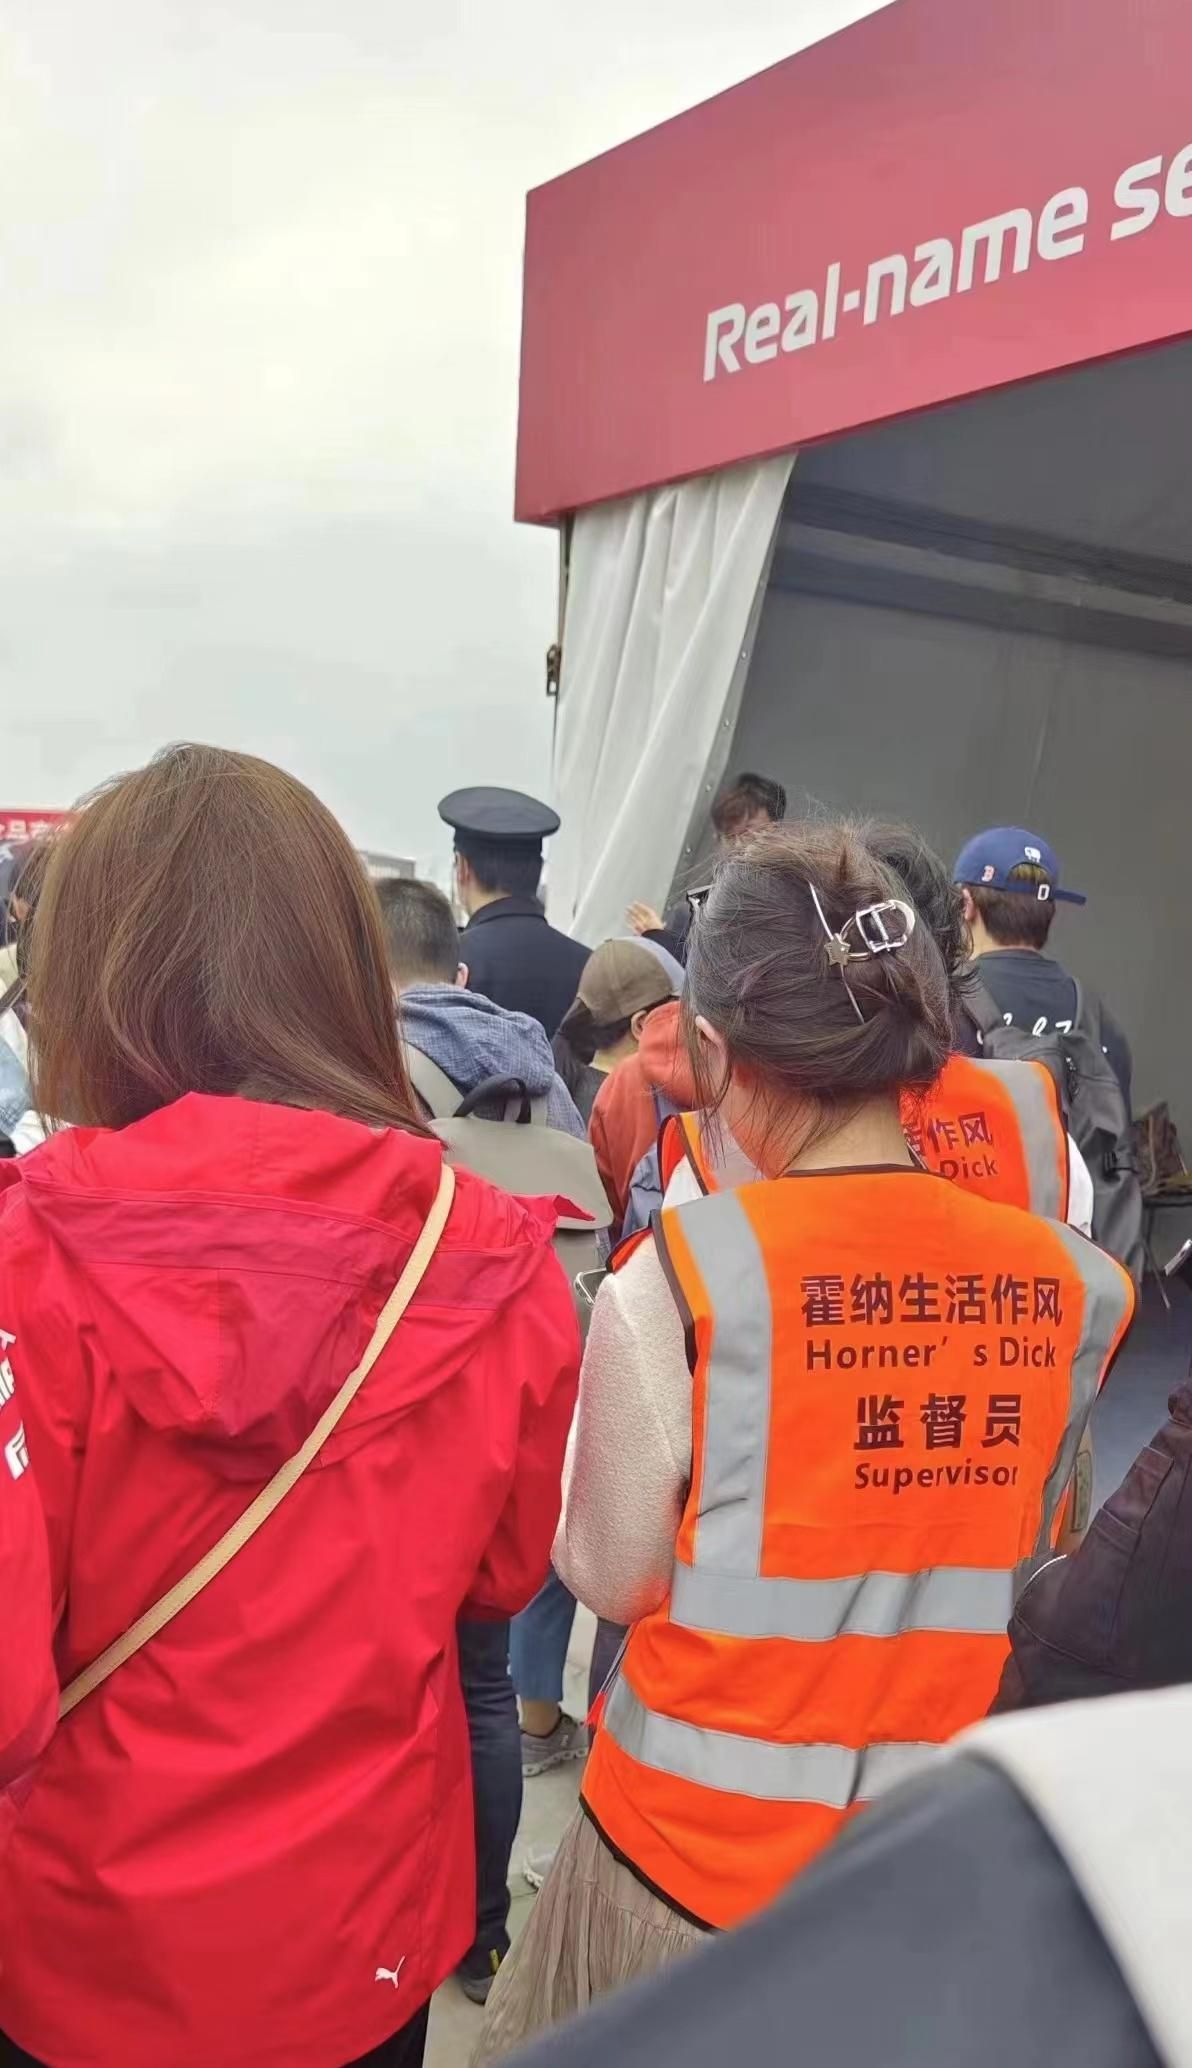 In beeld: Fans in China nemen Christian Horner-situatie op de hak met markante outfits